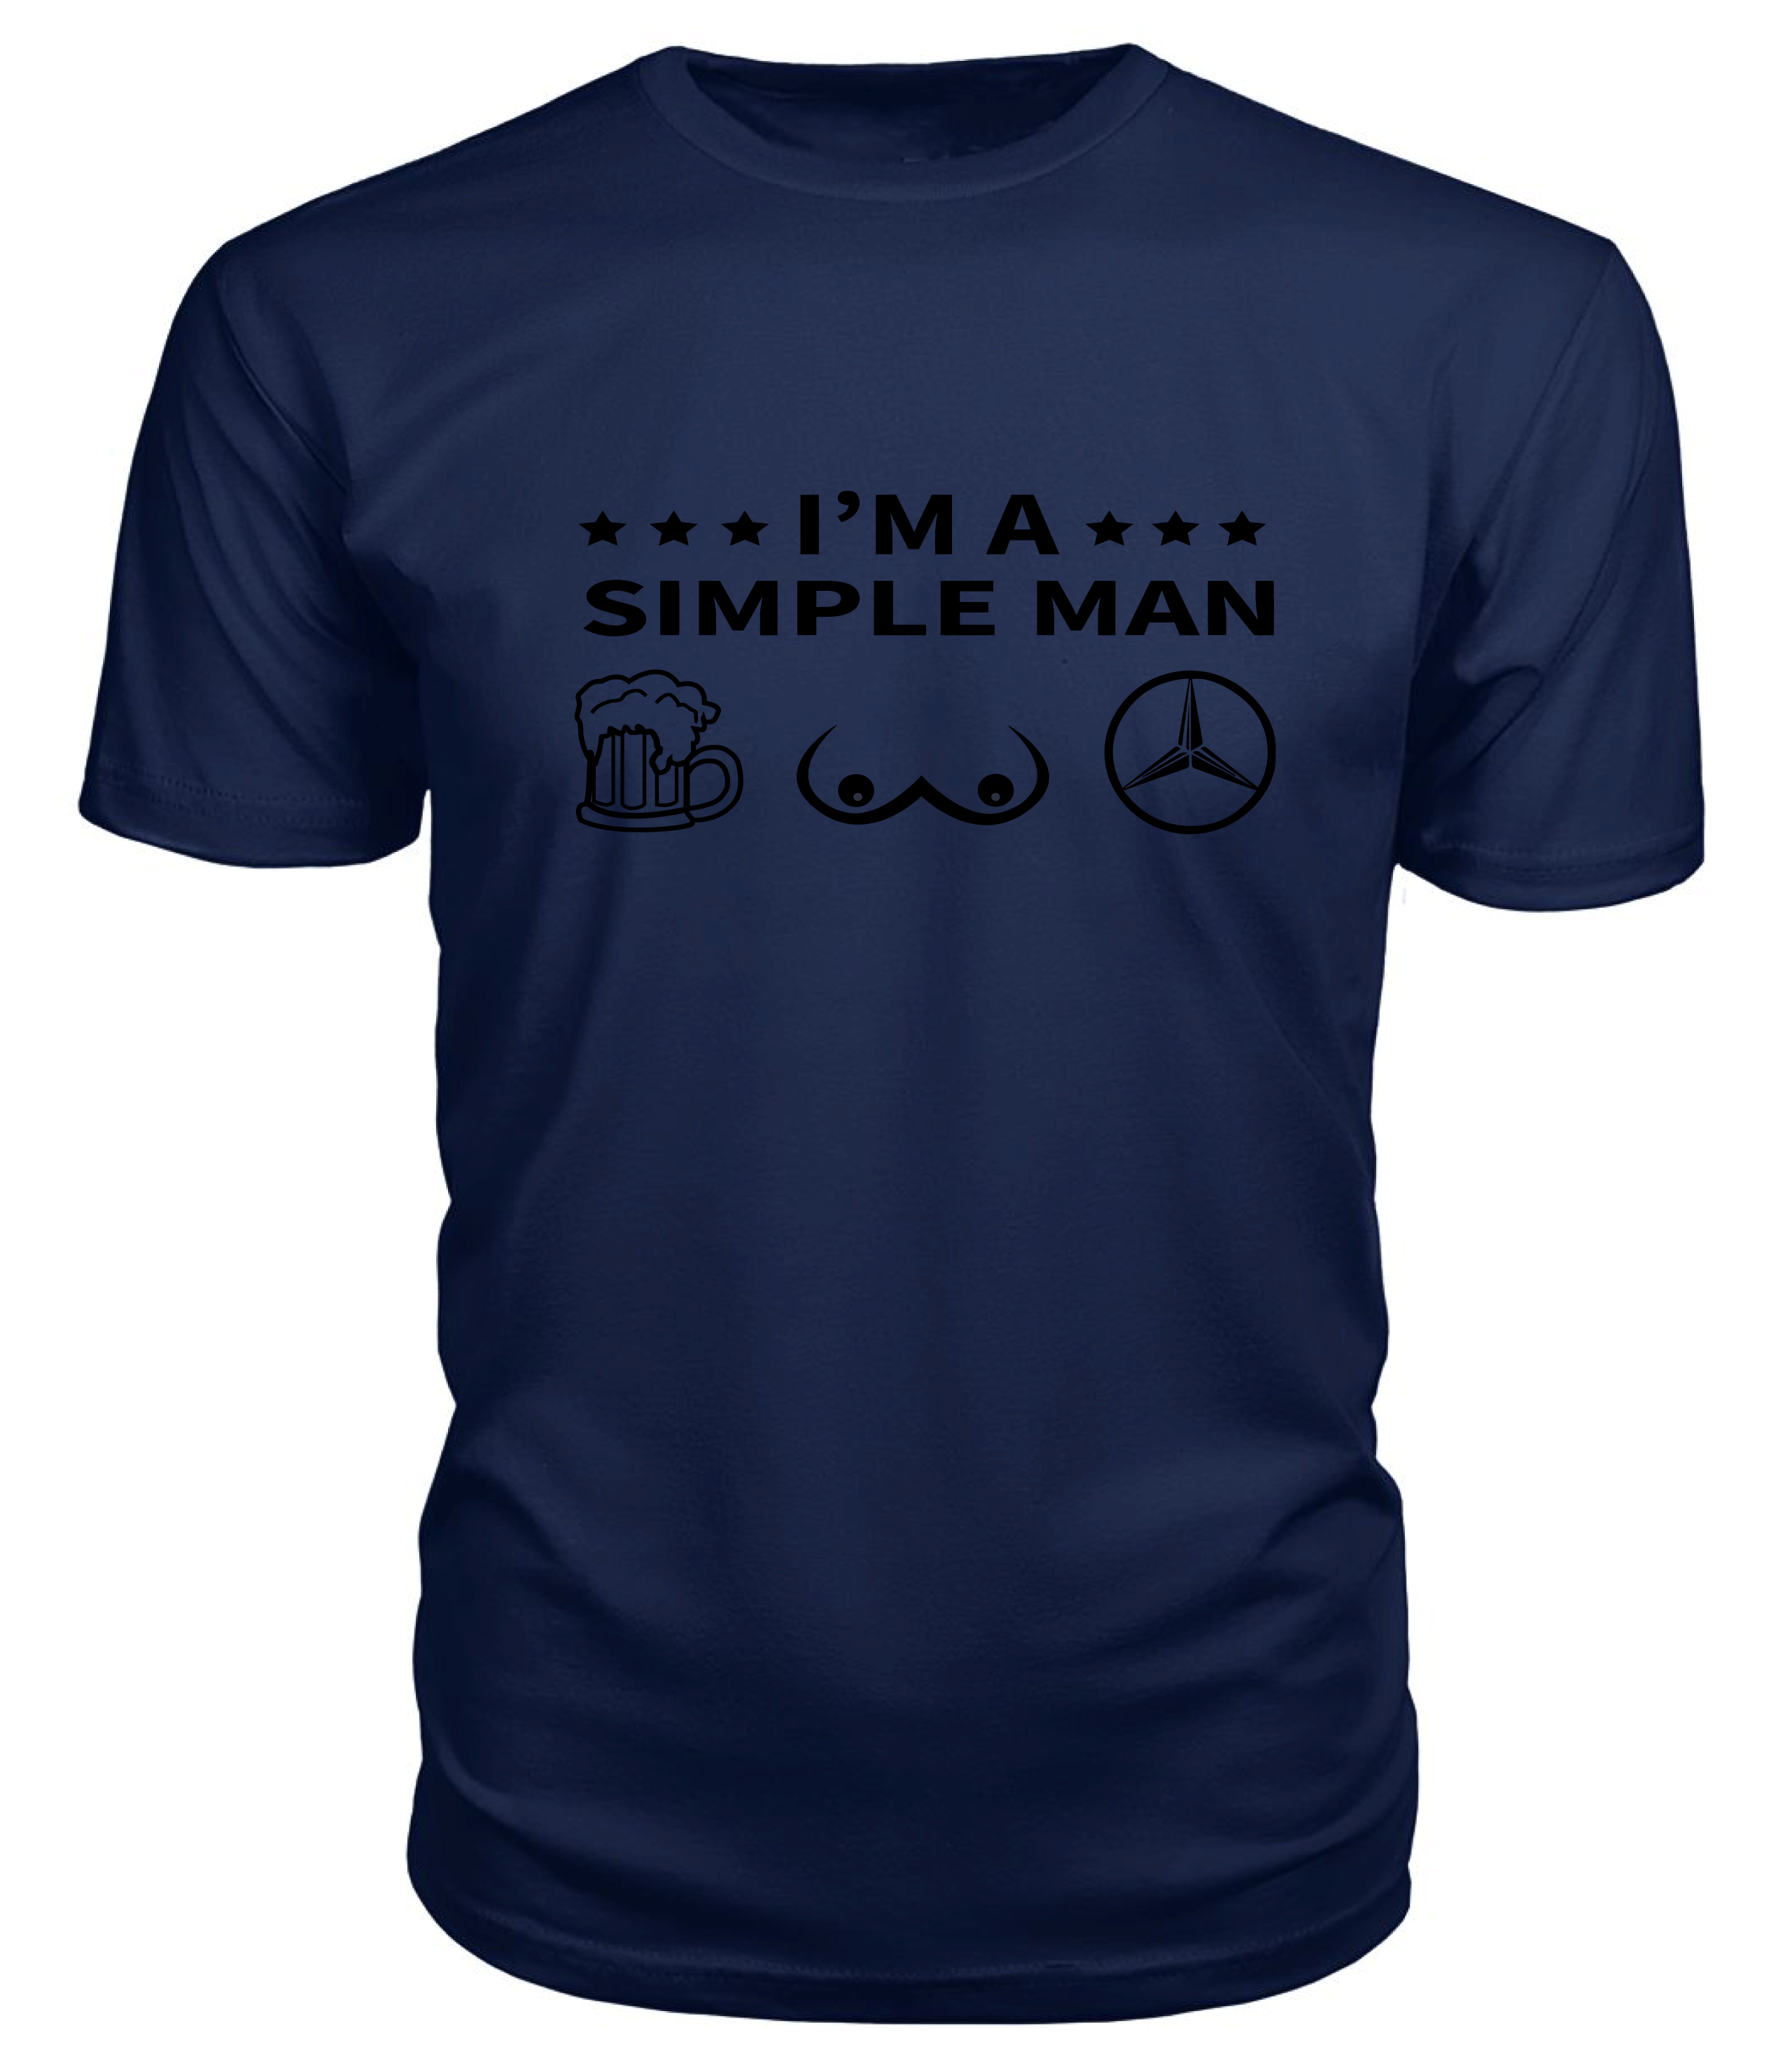 I AM A SIMPLE MAN Premium T-Shirt